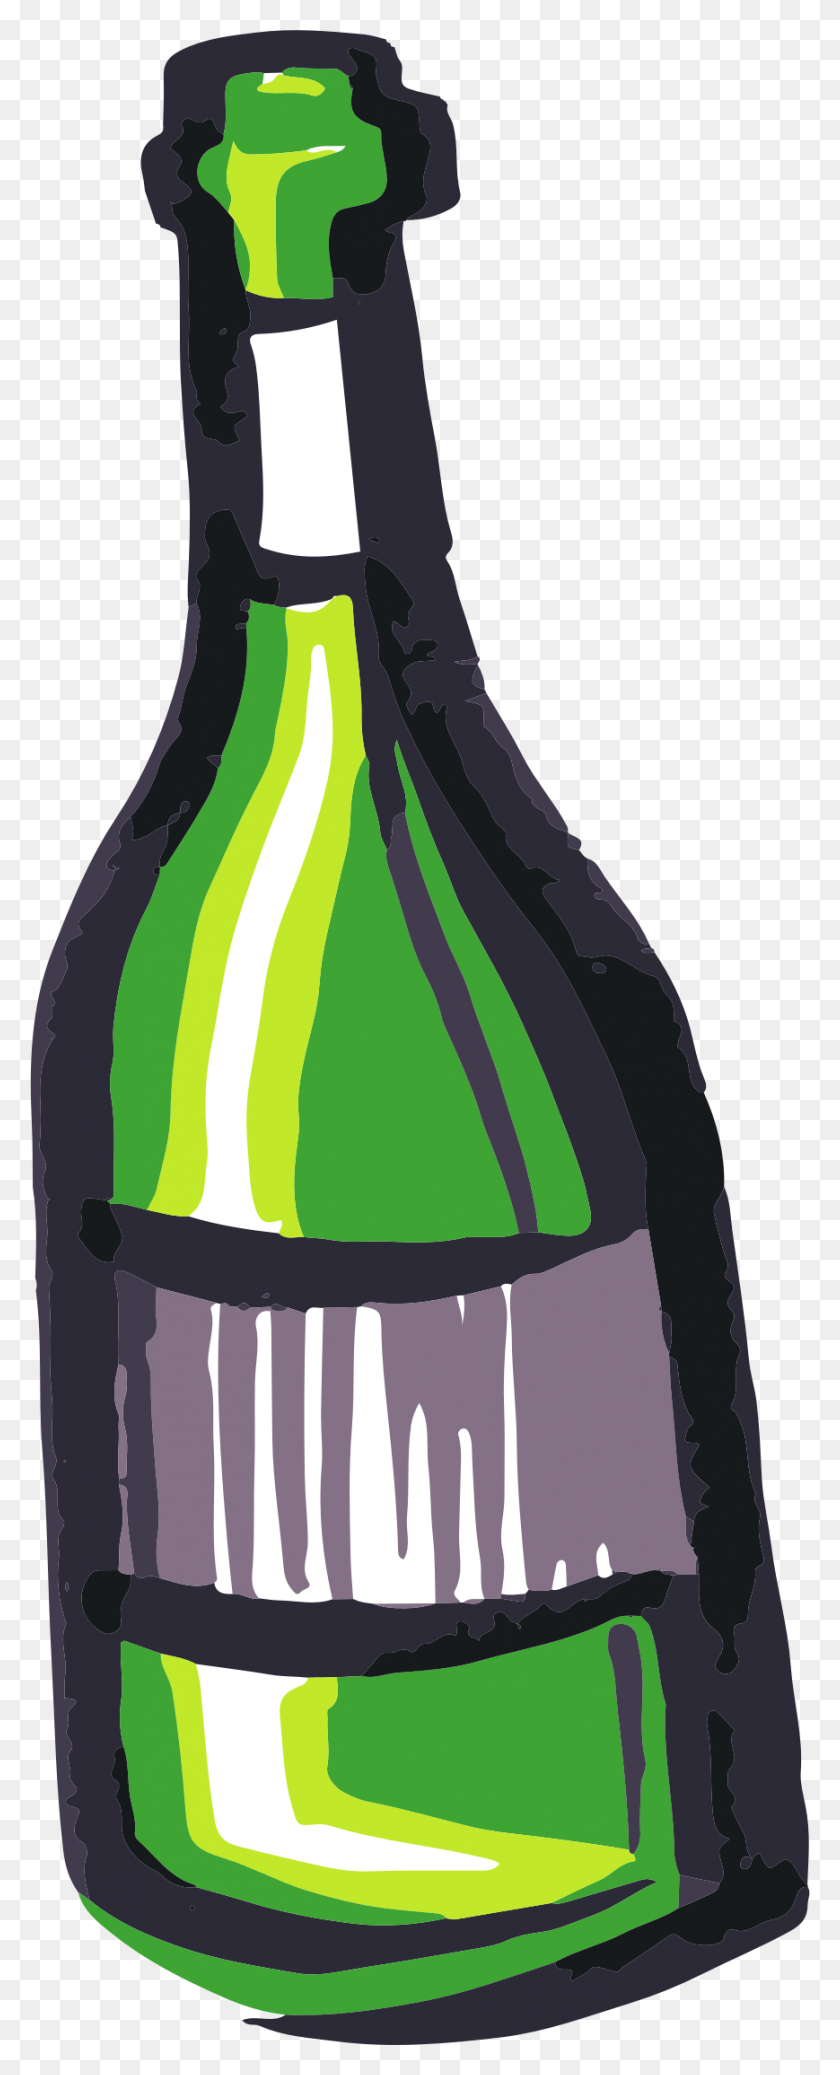 869x2245 Descargar Png / Diseño De Iconos Gratis De Botella De Vino Raseone, Botella, Bebida, Bebida Hd Png